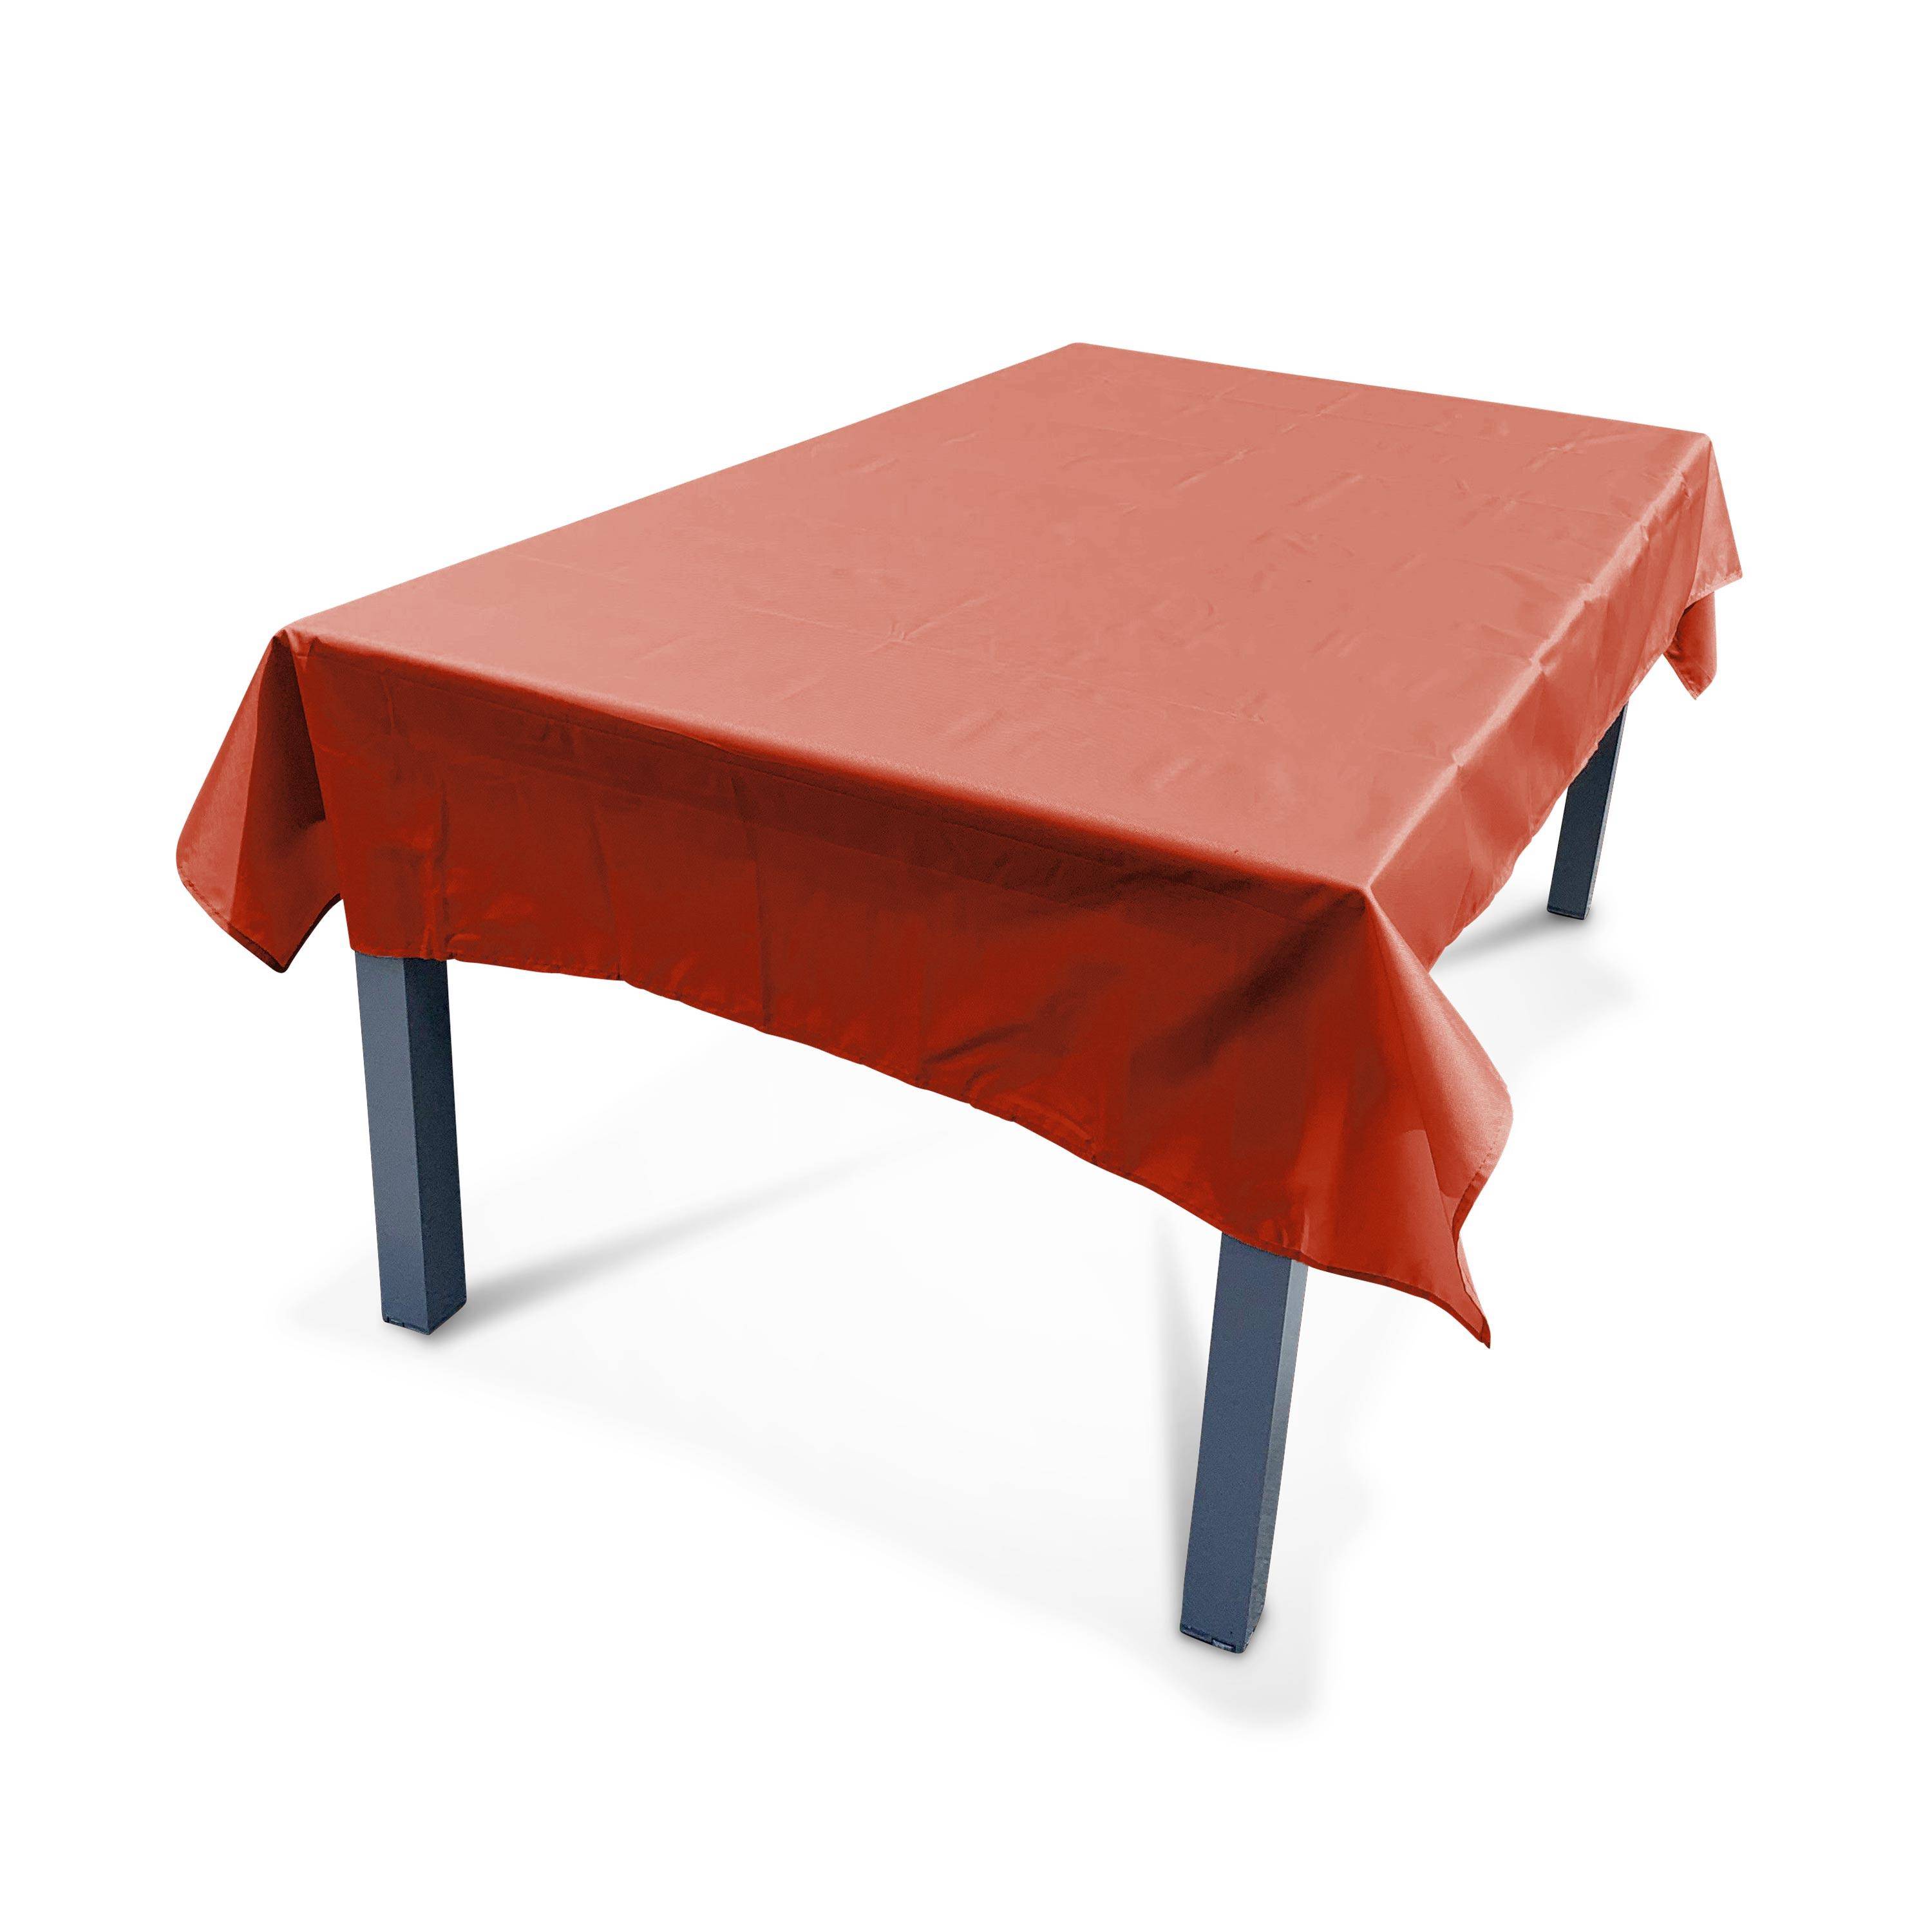 Outdoor-Tischdecke 140 X 240 cm Terrakotta, 100% Polyester, schützt den Tisch, UV-Schutz, sommerlicher Stil Photo1